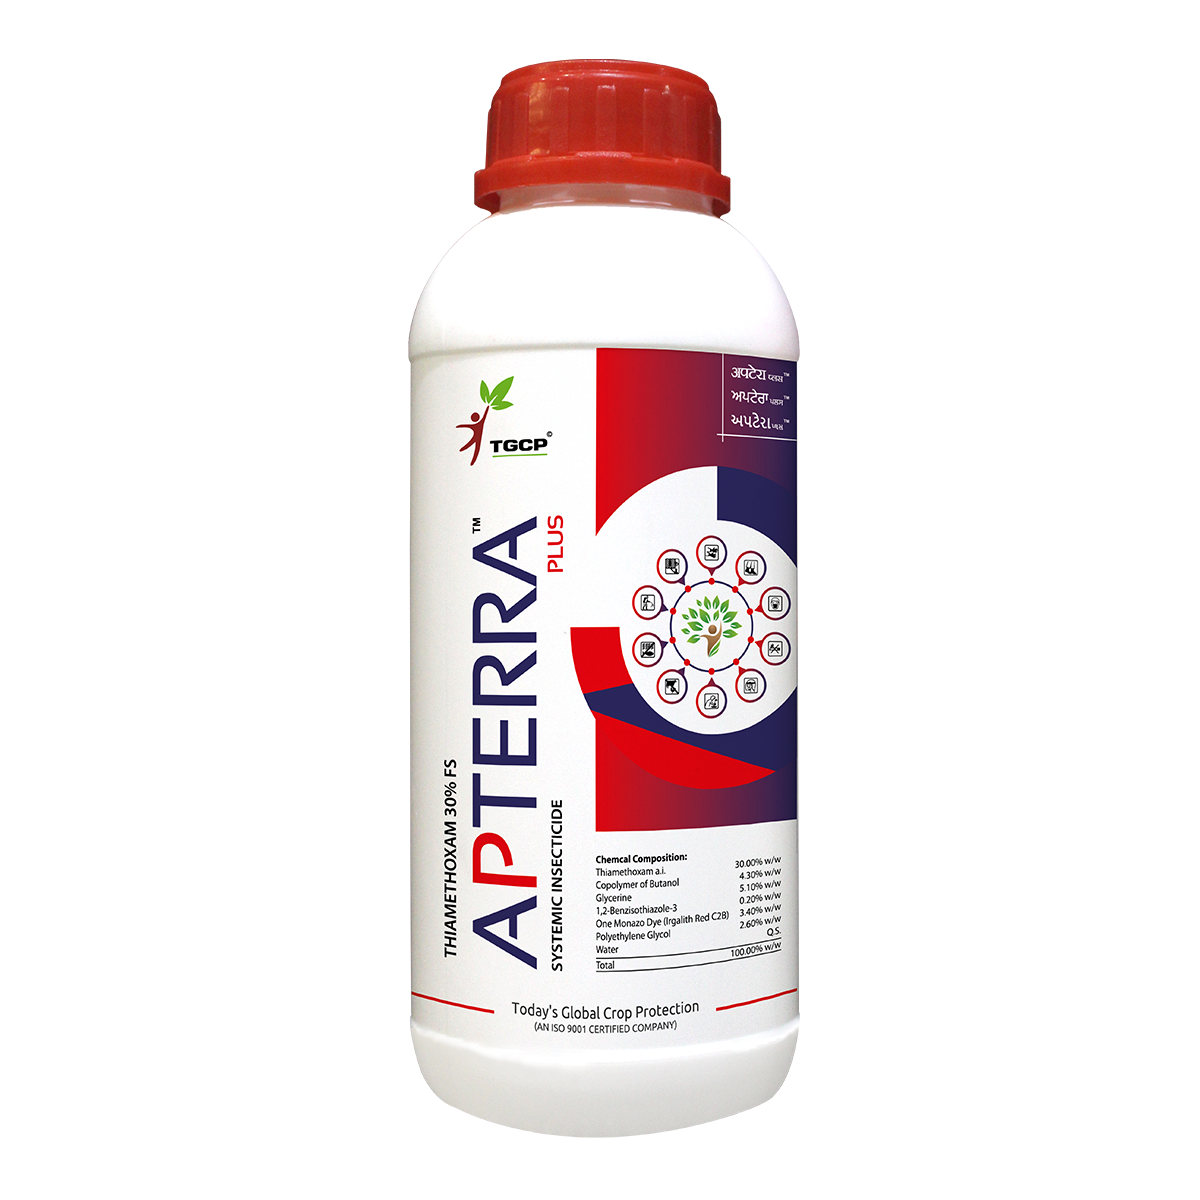 Apterra Plus - Thiamethoxam 30% FS Insecticide